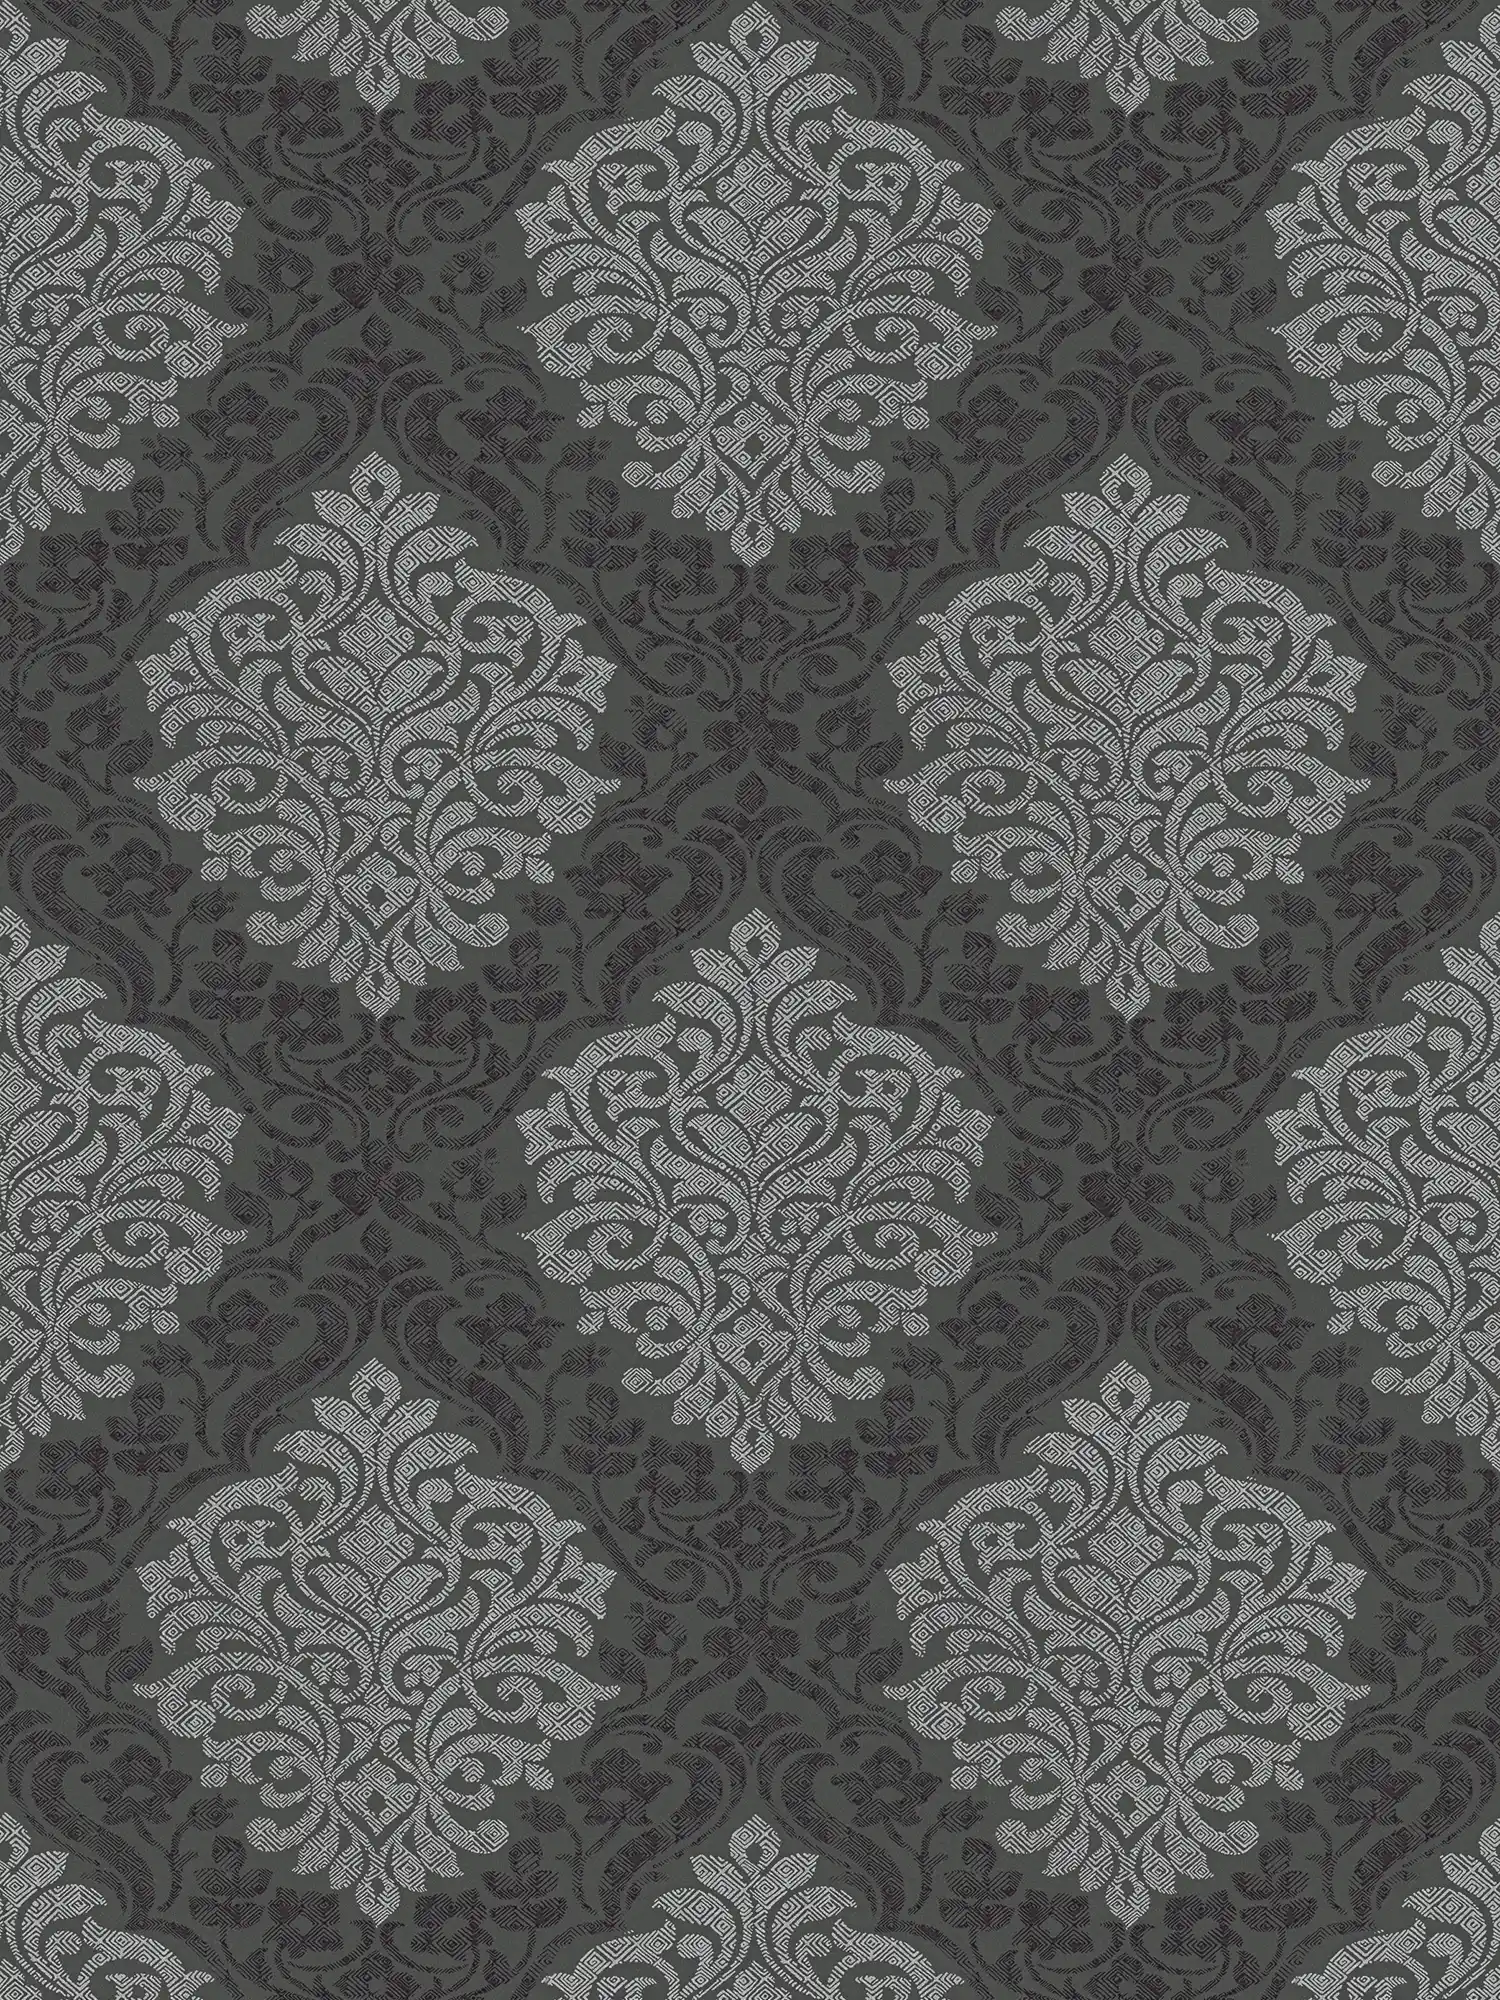 Floraal sierbehang ruitpatroon in ethno stijl - zilver, zwart, grijs
